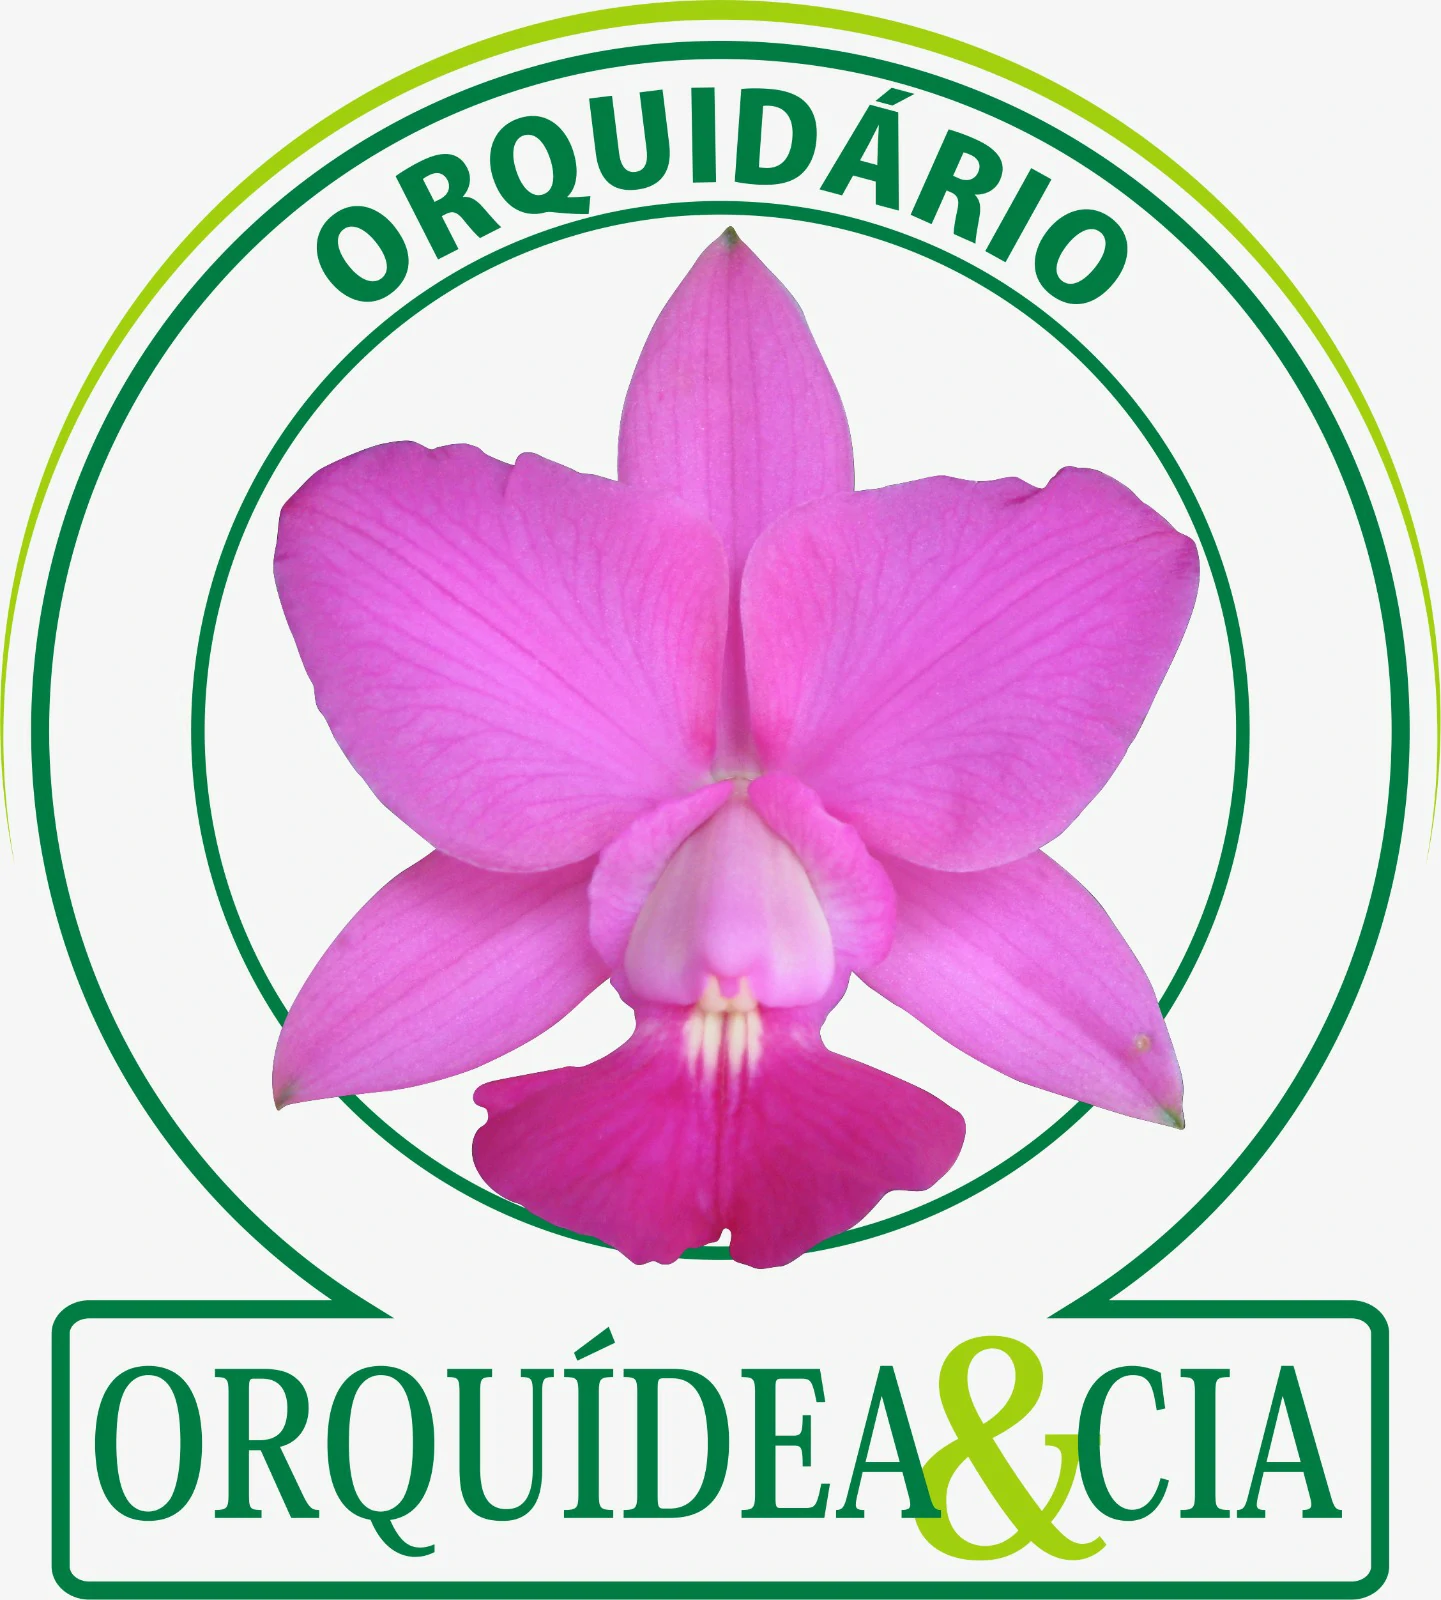 Orquidea e Cia